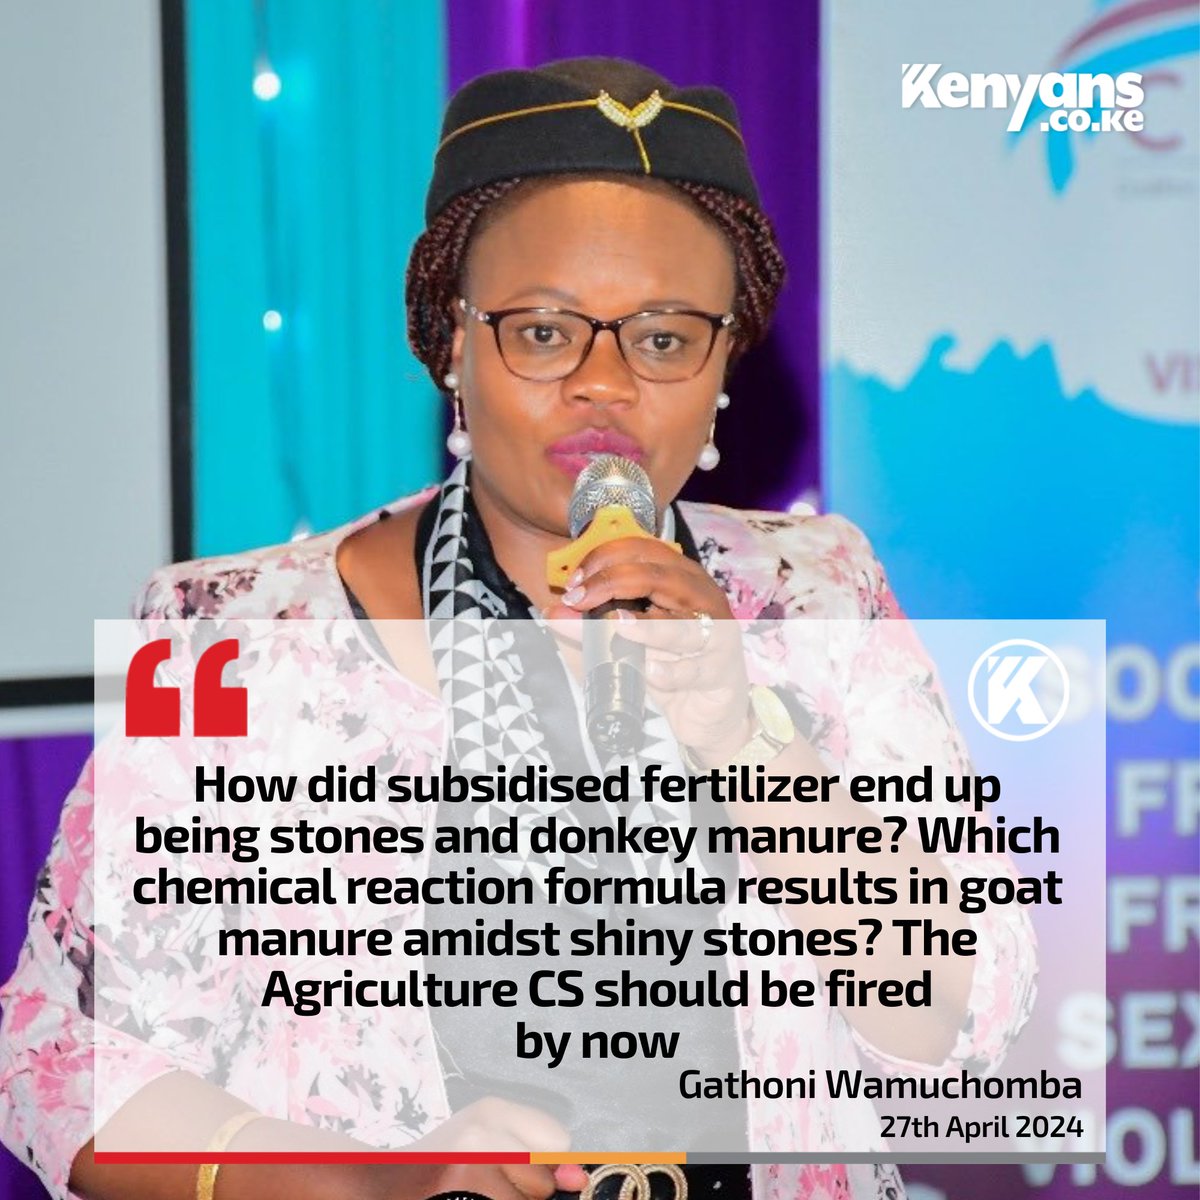 How did subsidised fertilizer end up being stones and donkey manure? - Gathoni Wamuchomba